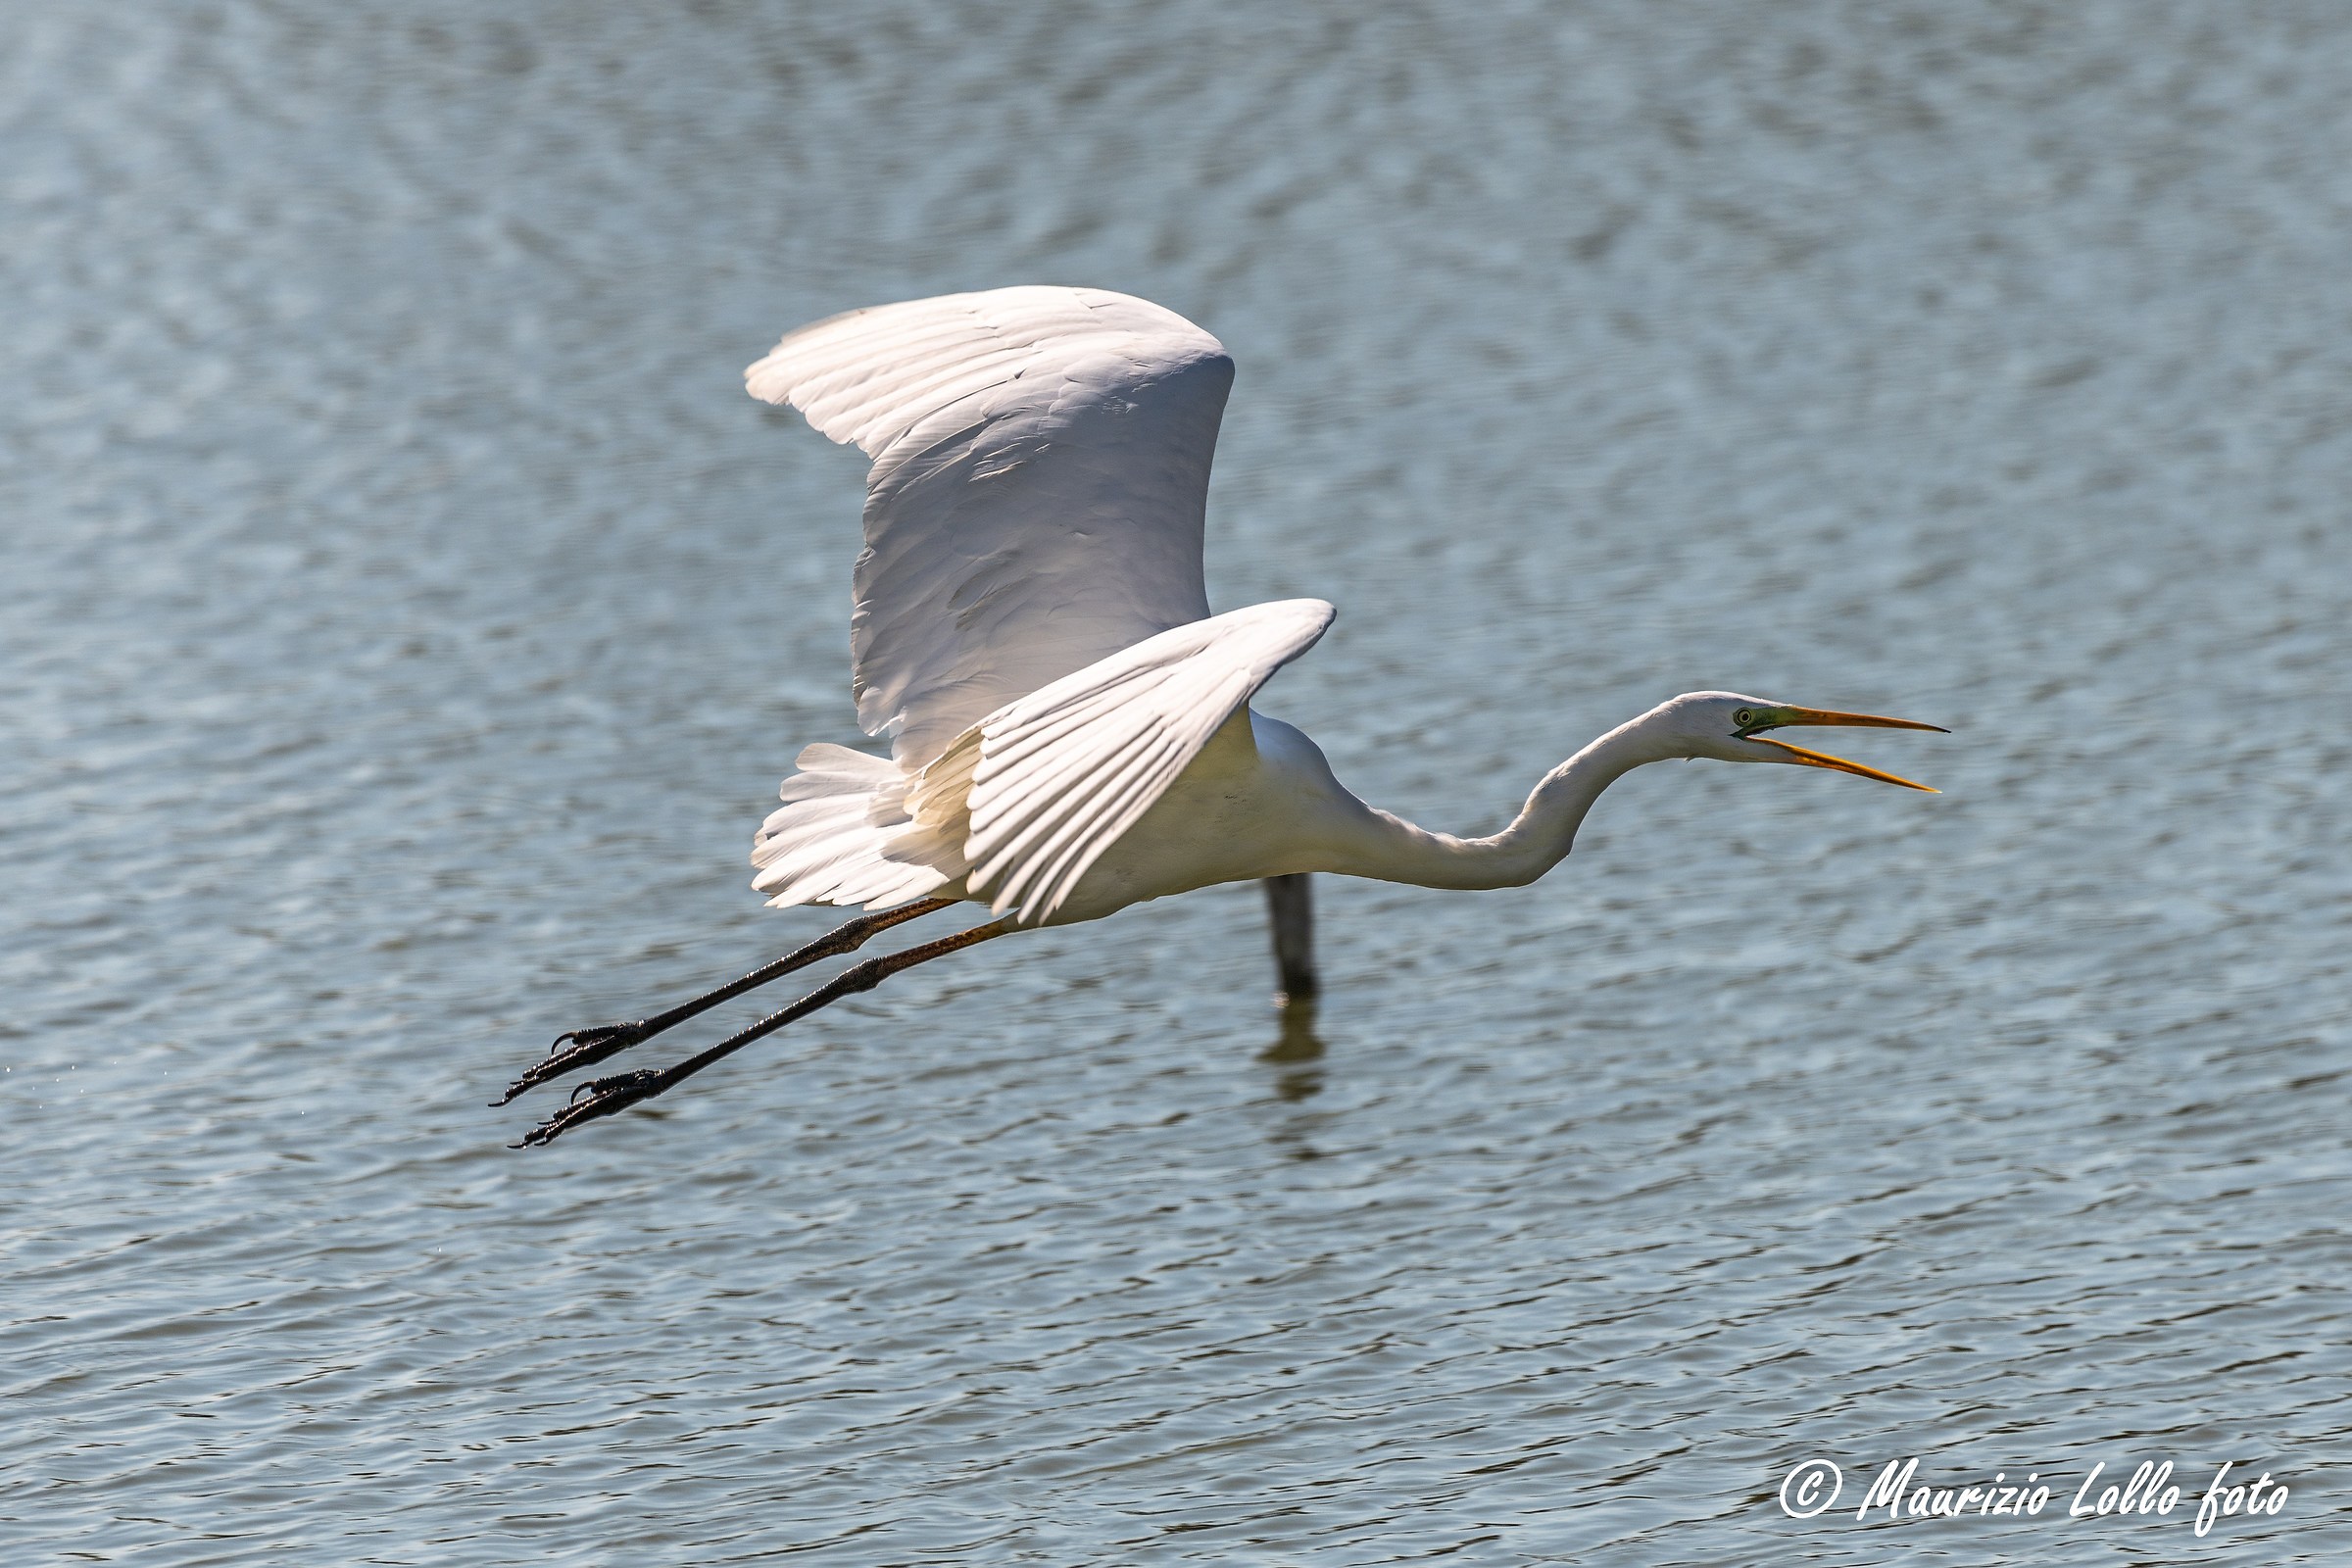 White Heron on takeoff...